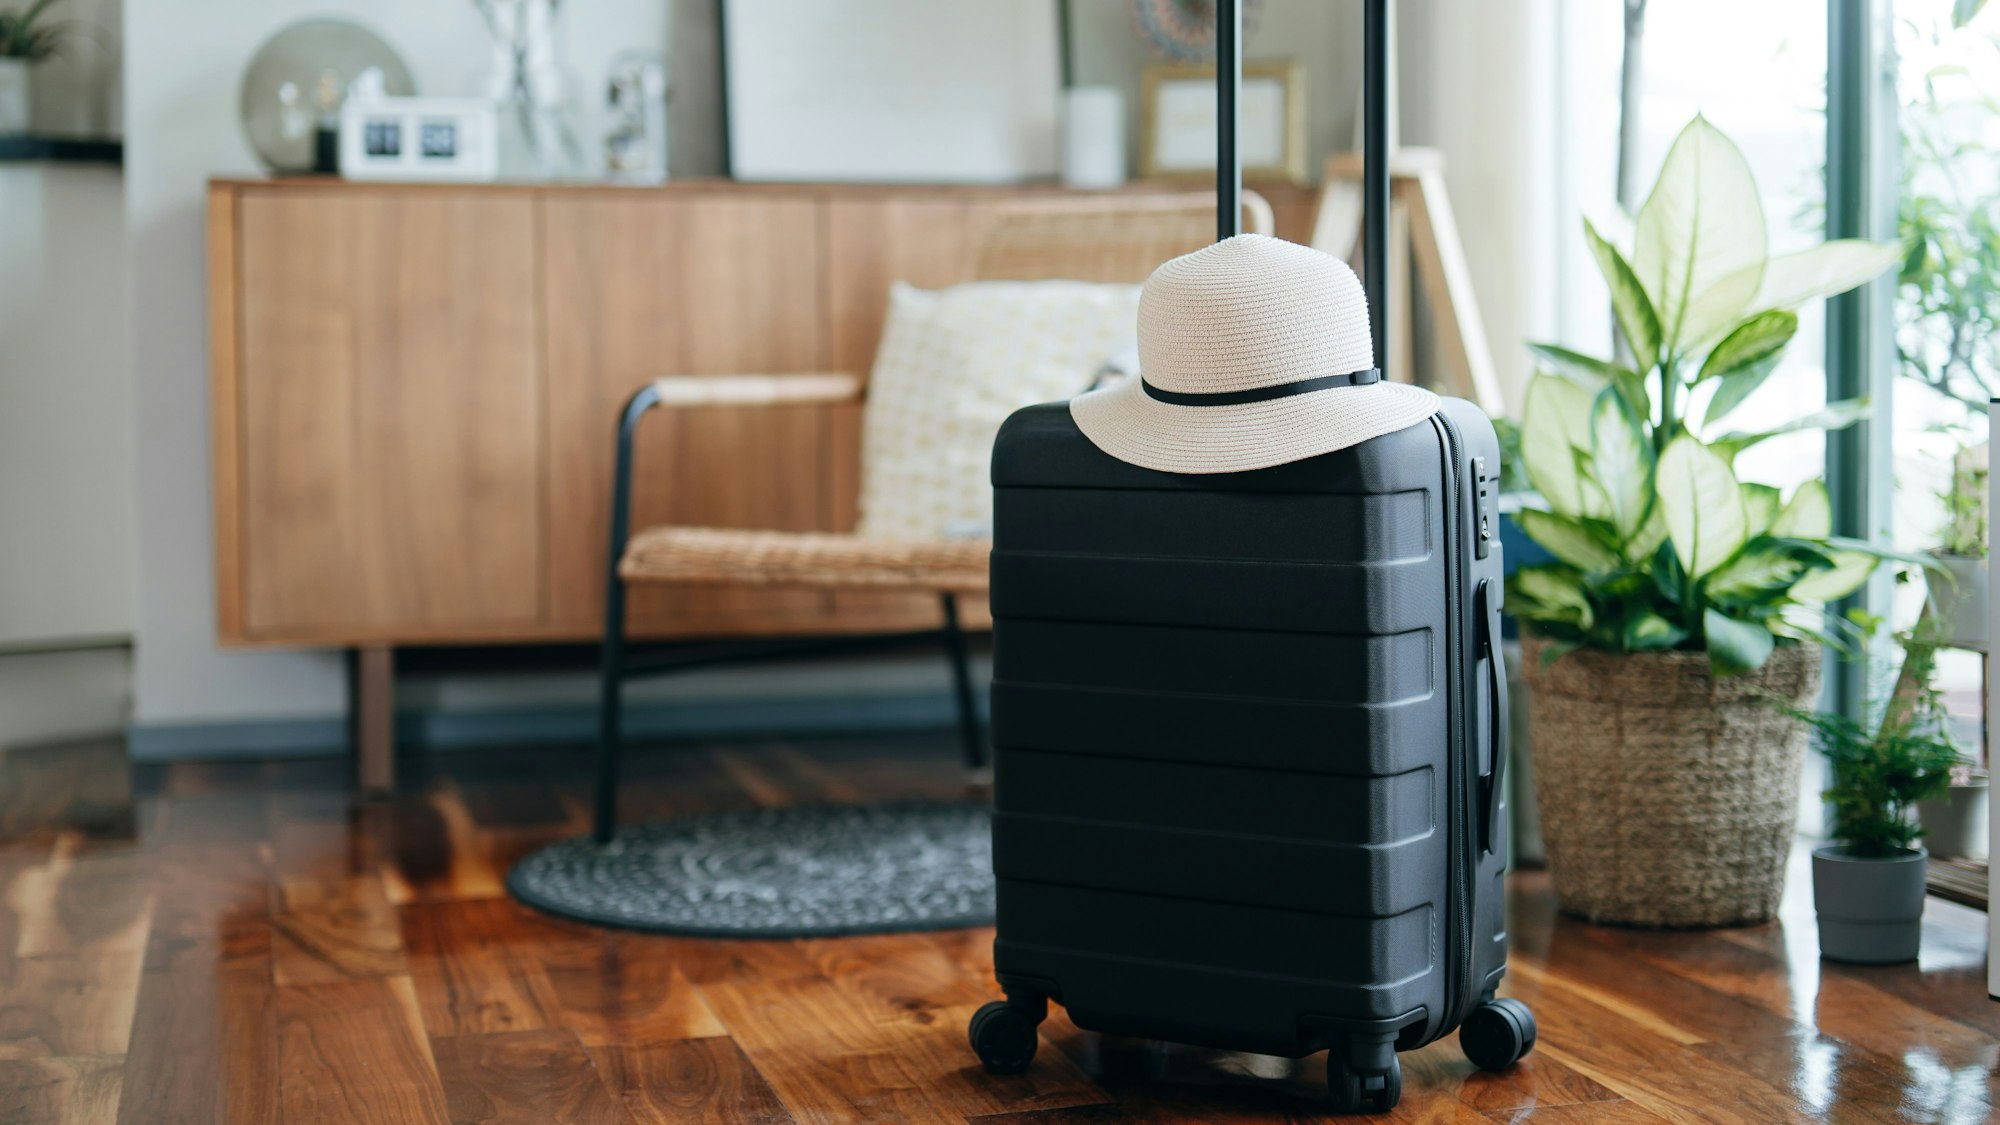 In einem Wohnzimmer steht ein kleiner schwarzer Koffer, darauf liegt ein weißer Hut